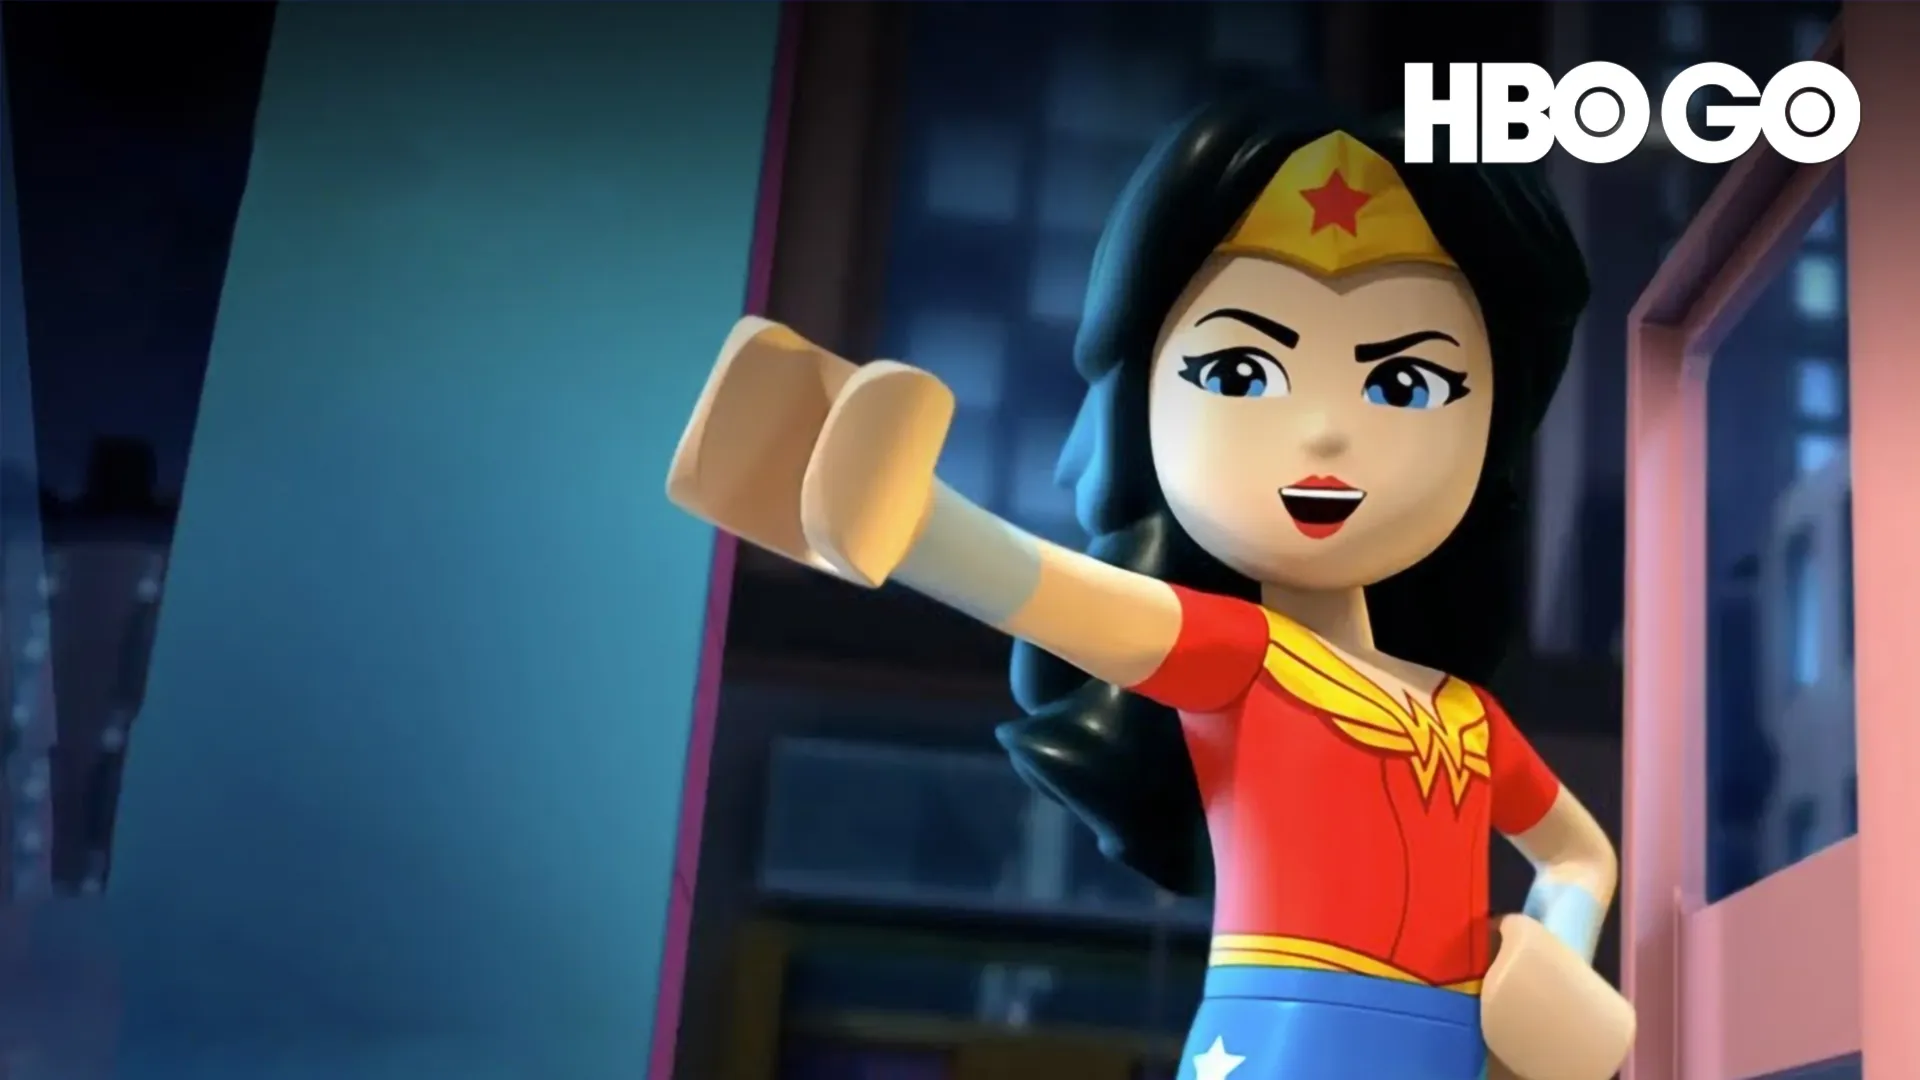 Lego Những Nữ Siêu Anh Hùng DC: Nữ Thần Thiên Hà